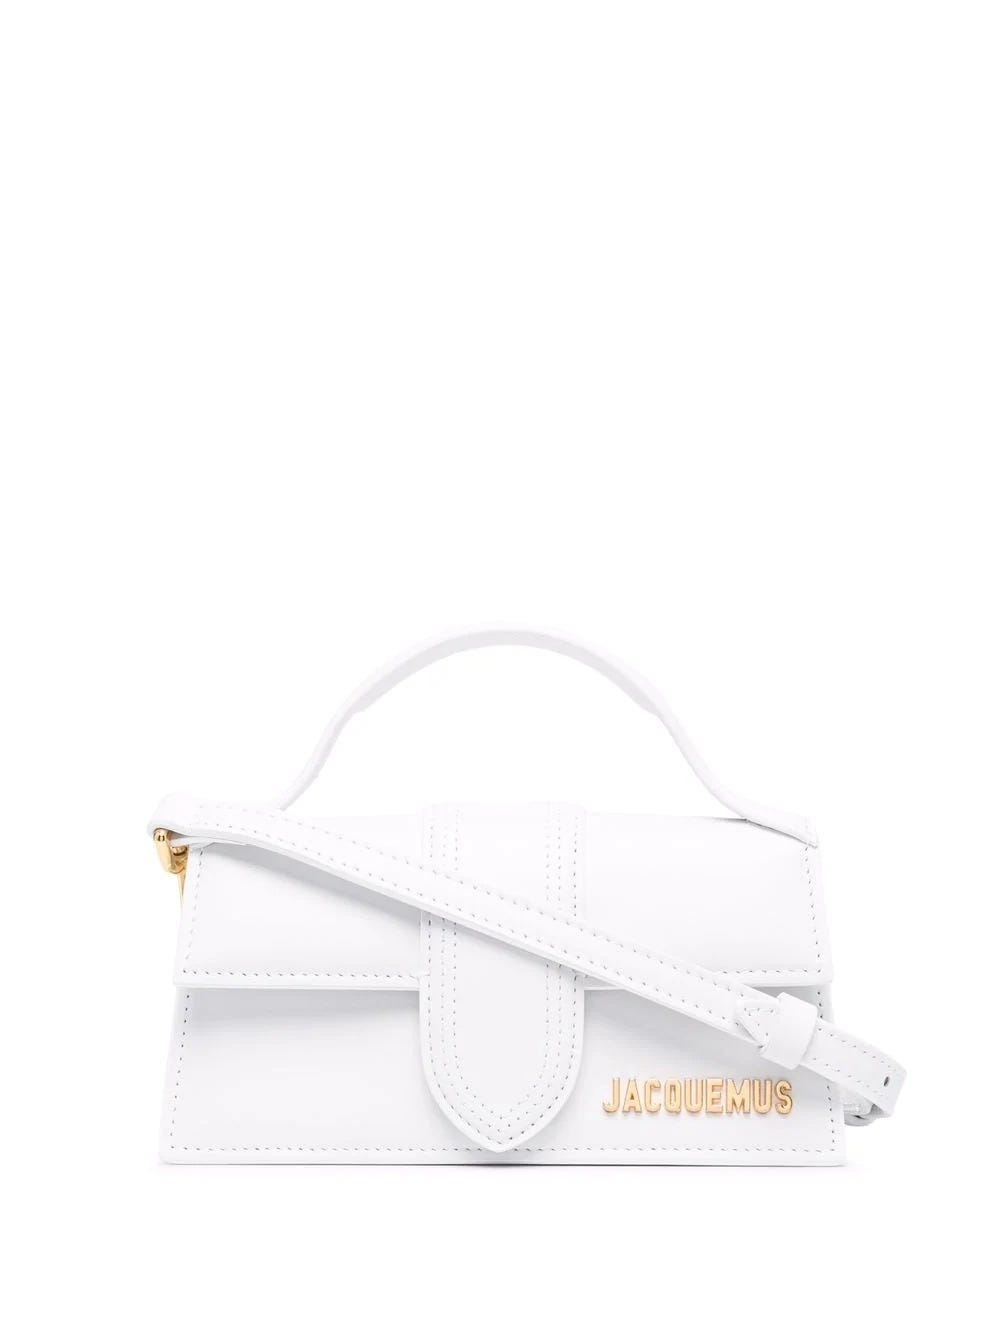 Jacquemus Le Bambino Bag White | ModeSens